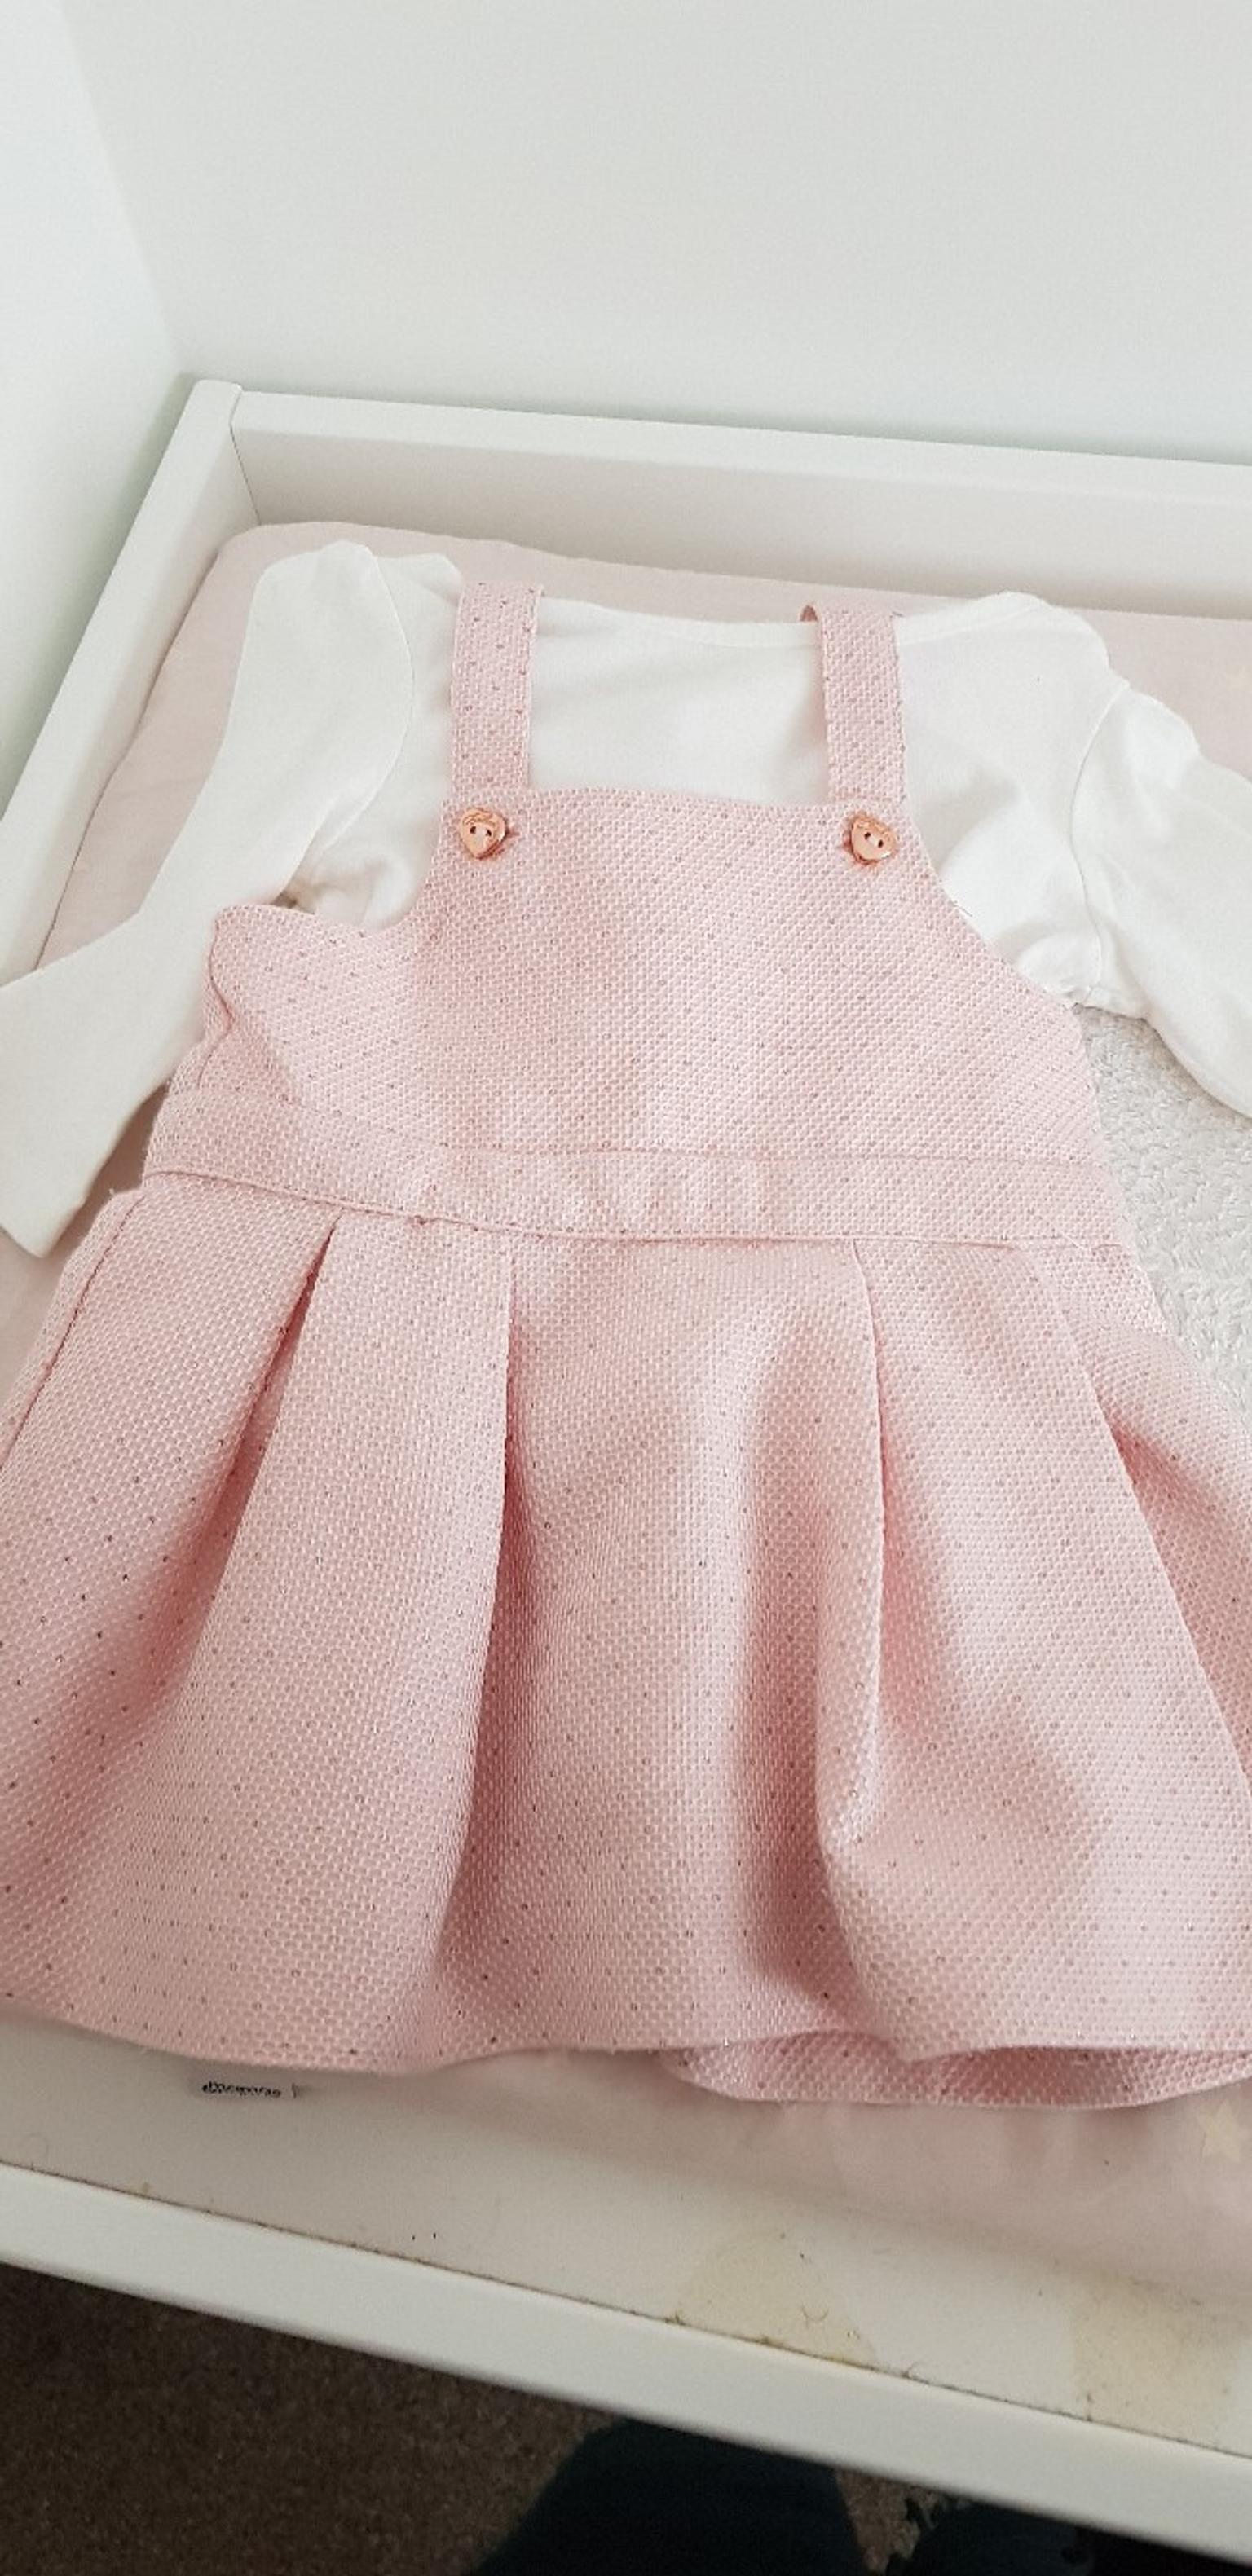 ted baker dresses for baby girl